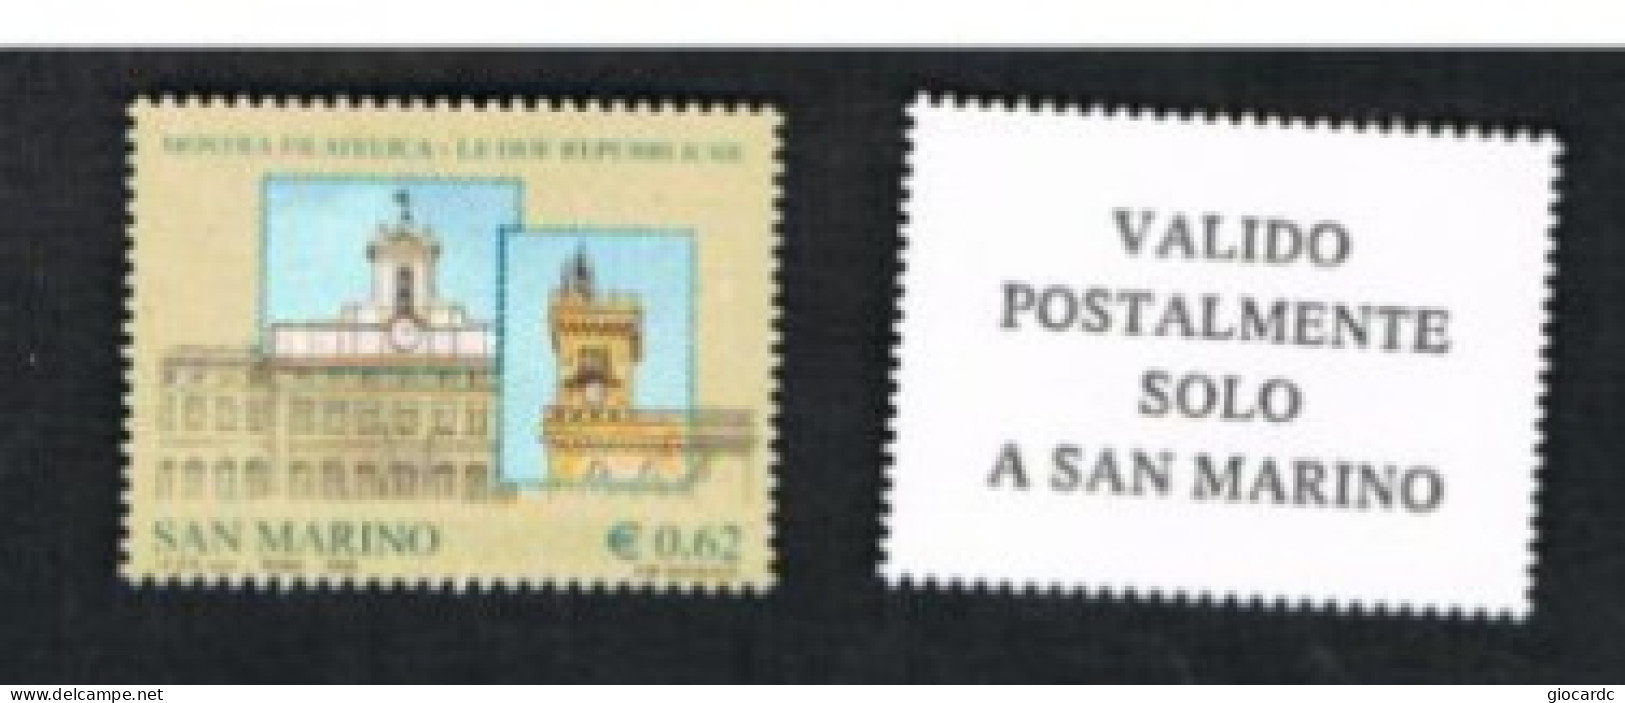 SAN MARINO - UN 2103 - 2006  LE DUE REPUBBLICHE, BY BF    - MINT ** - Unused Stamps